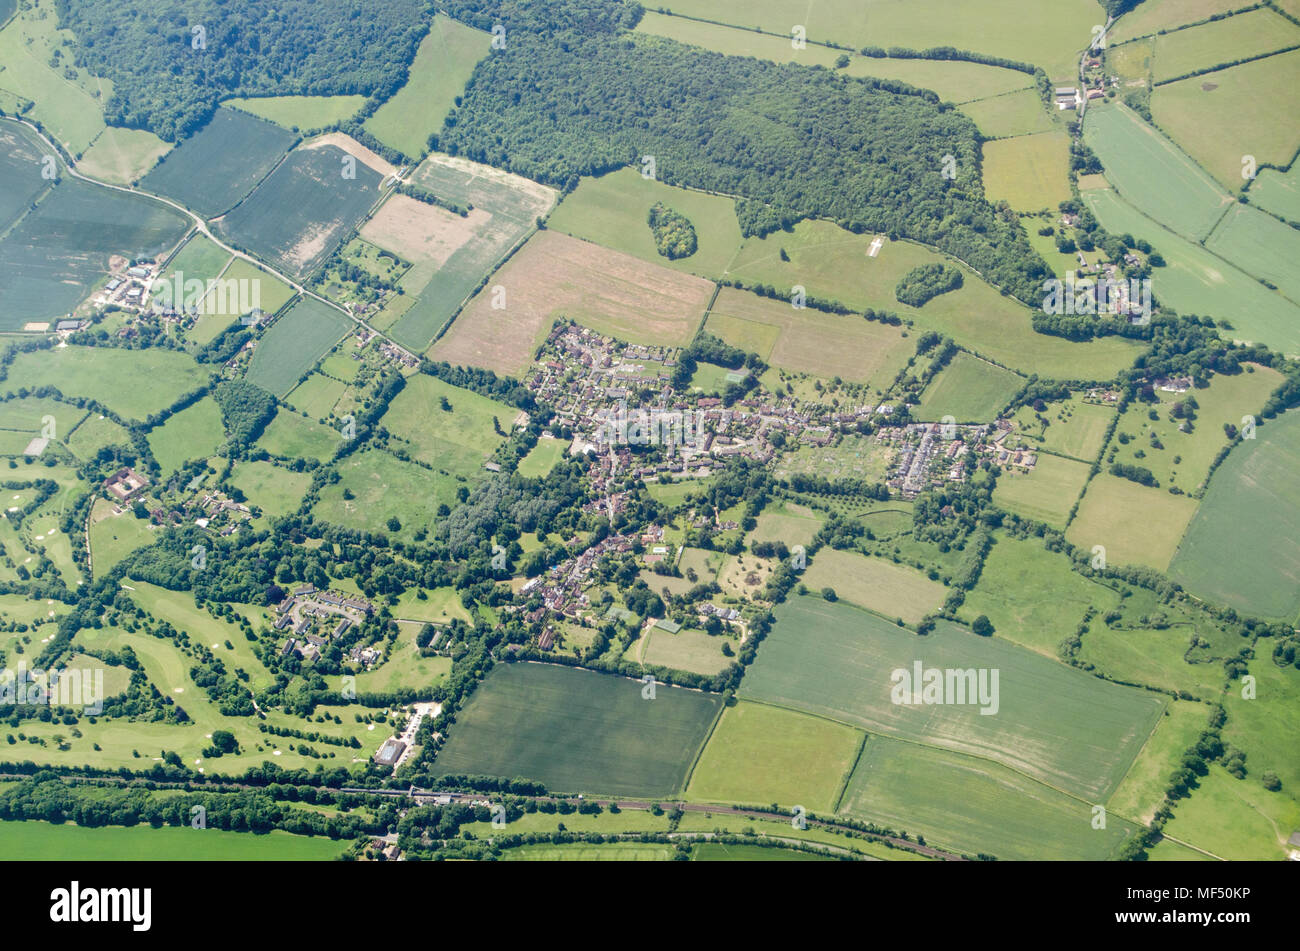 Vue aérienne du village de Shoreham Kent sur une journée ensoleillée. Remarque La croix blanche couper dans la craie des bas qui est un mémorial pour ceux qui ont été tués Banque D'Images